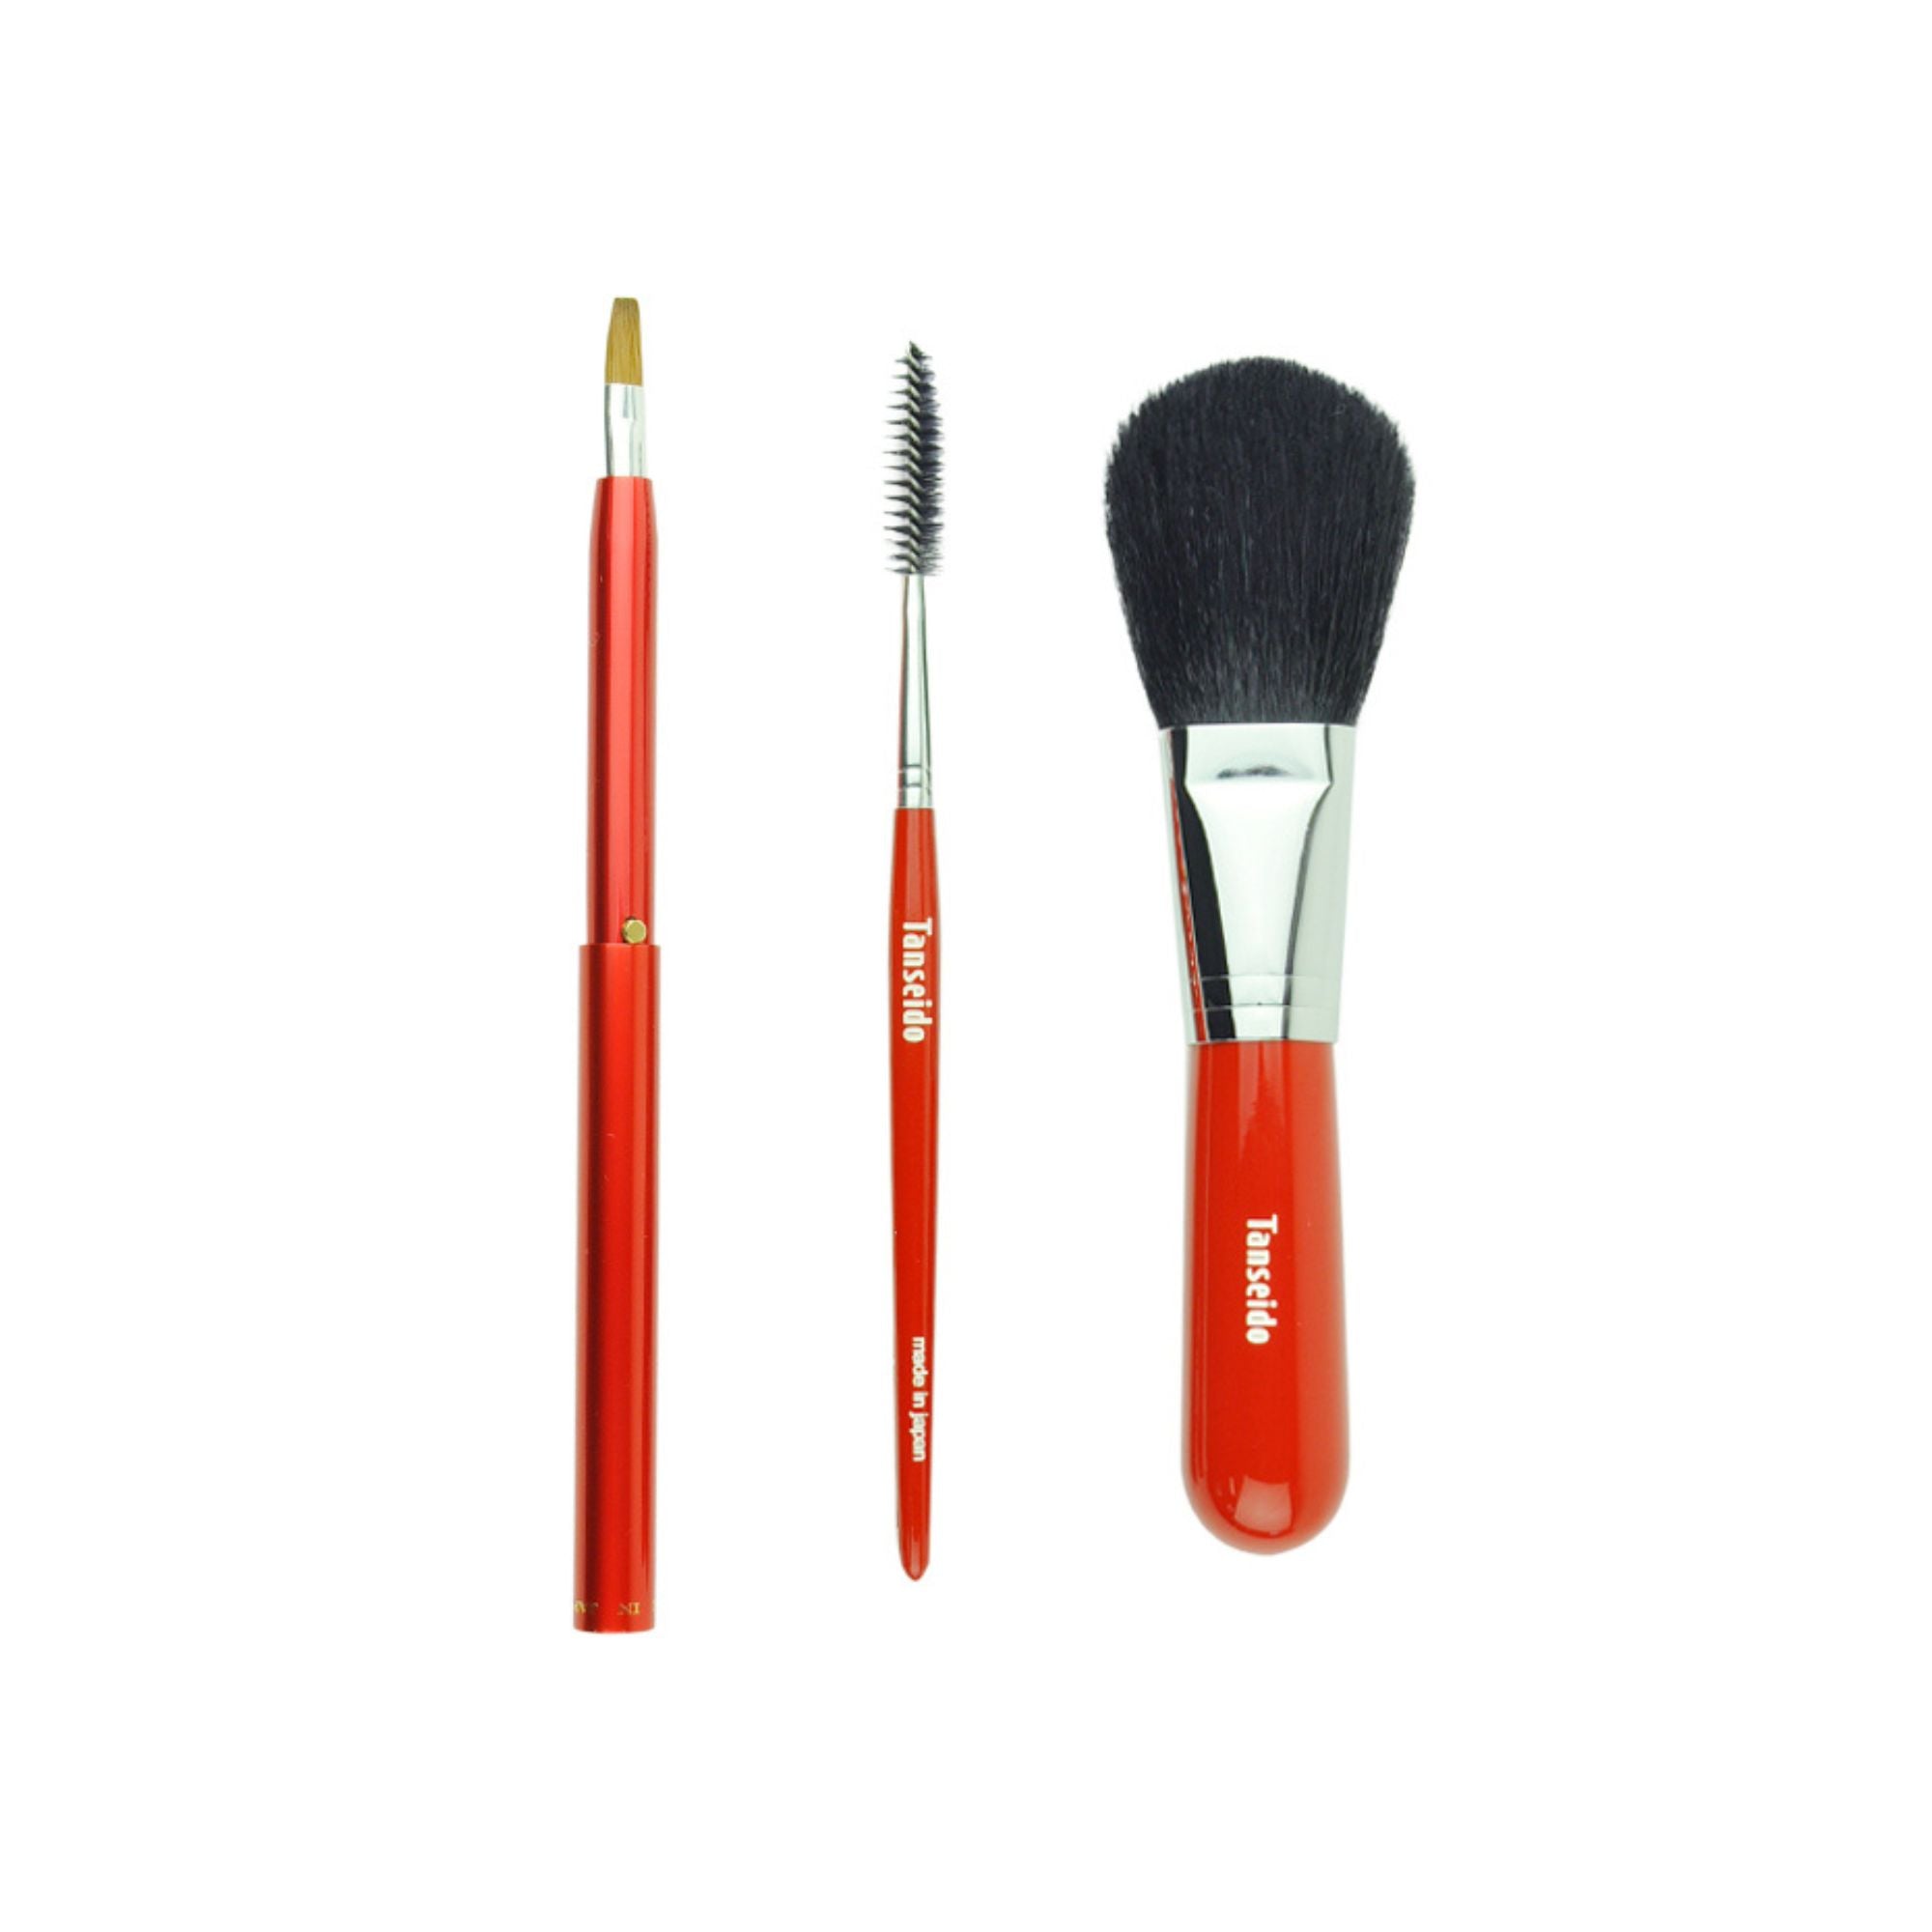 Tanseido Basic Set (2) - Fude Beauty, Japanese Makeup Brushes